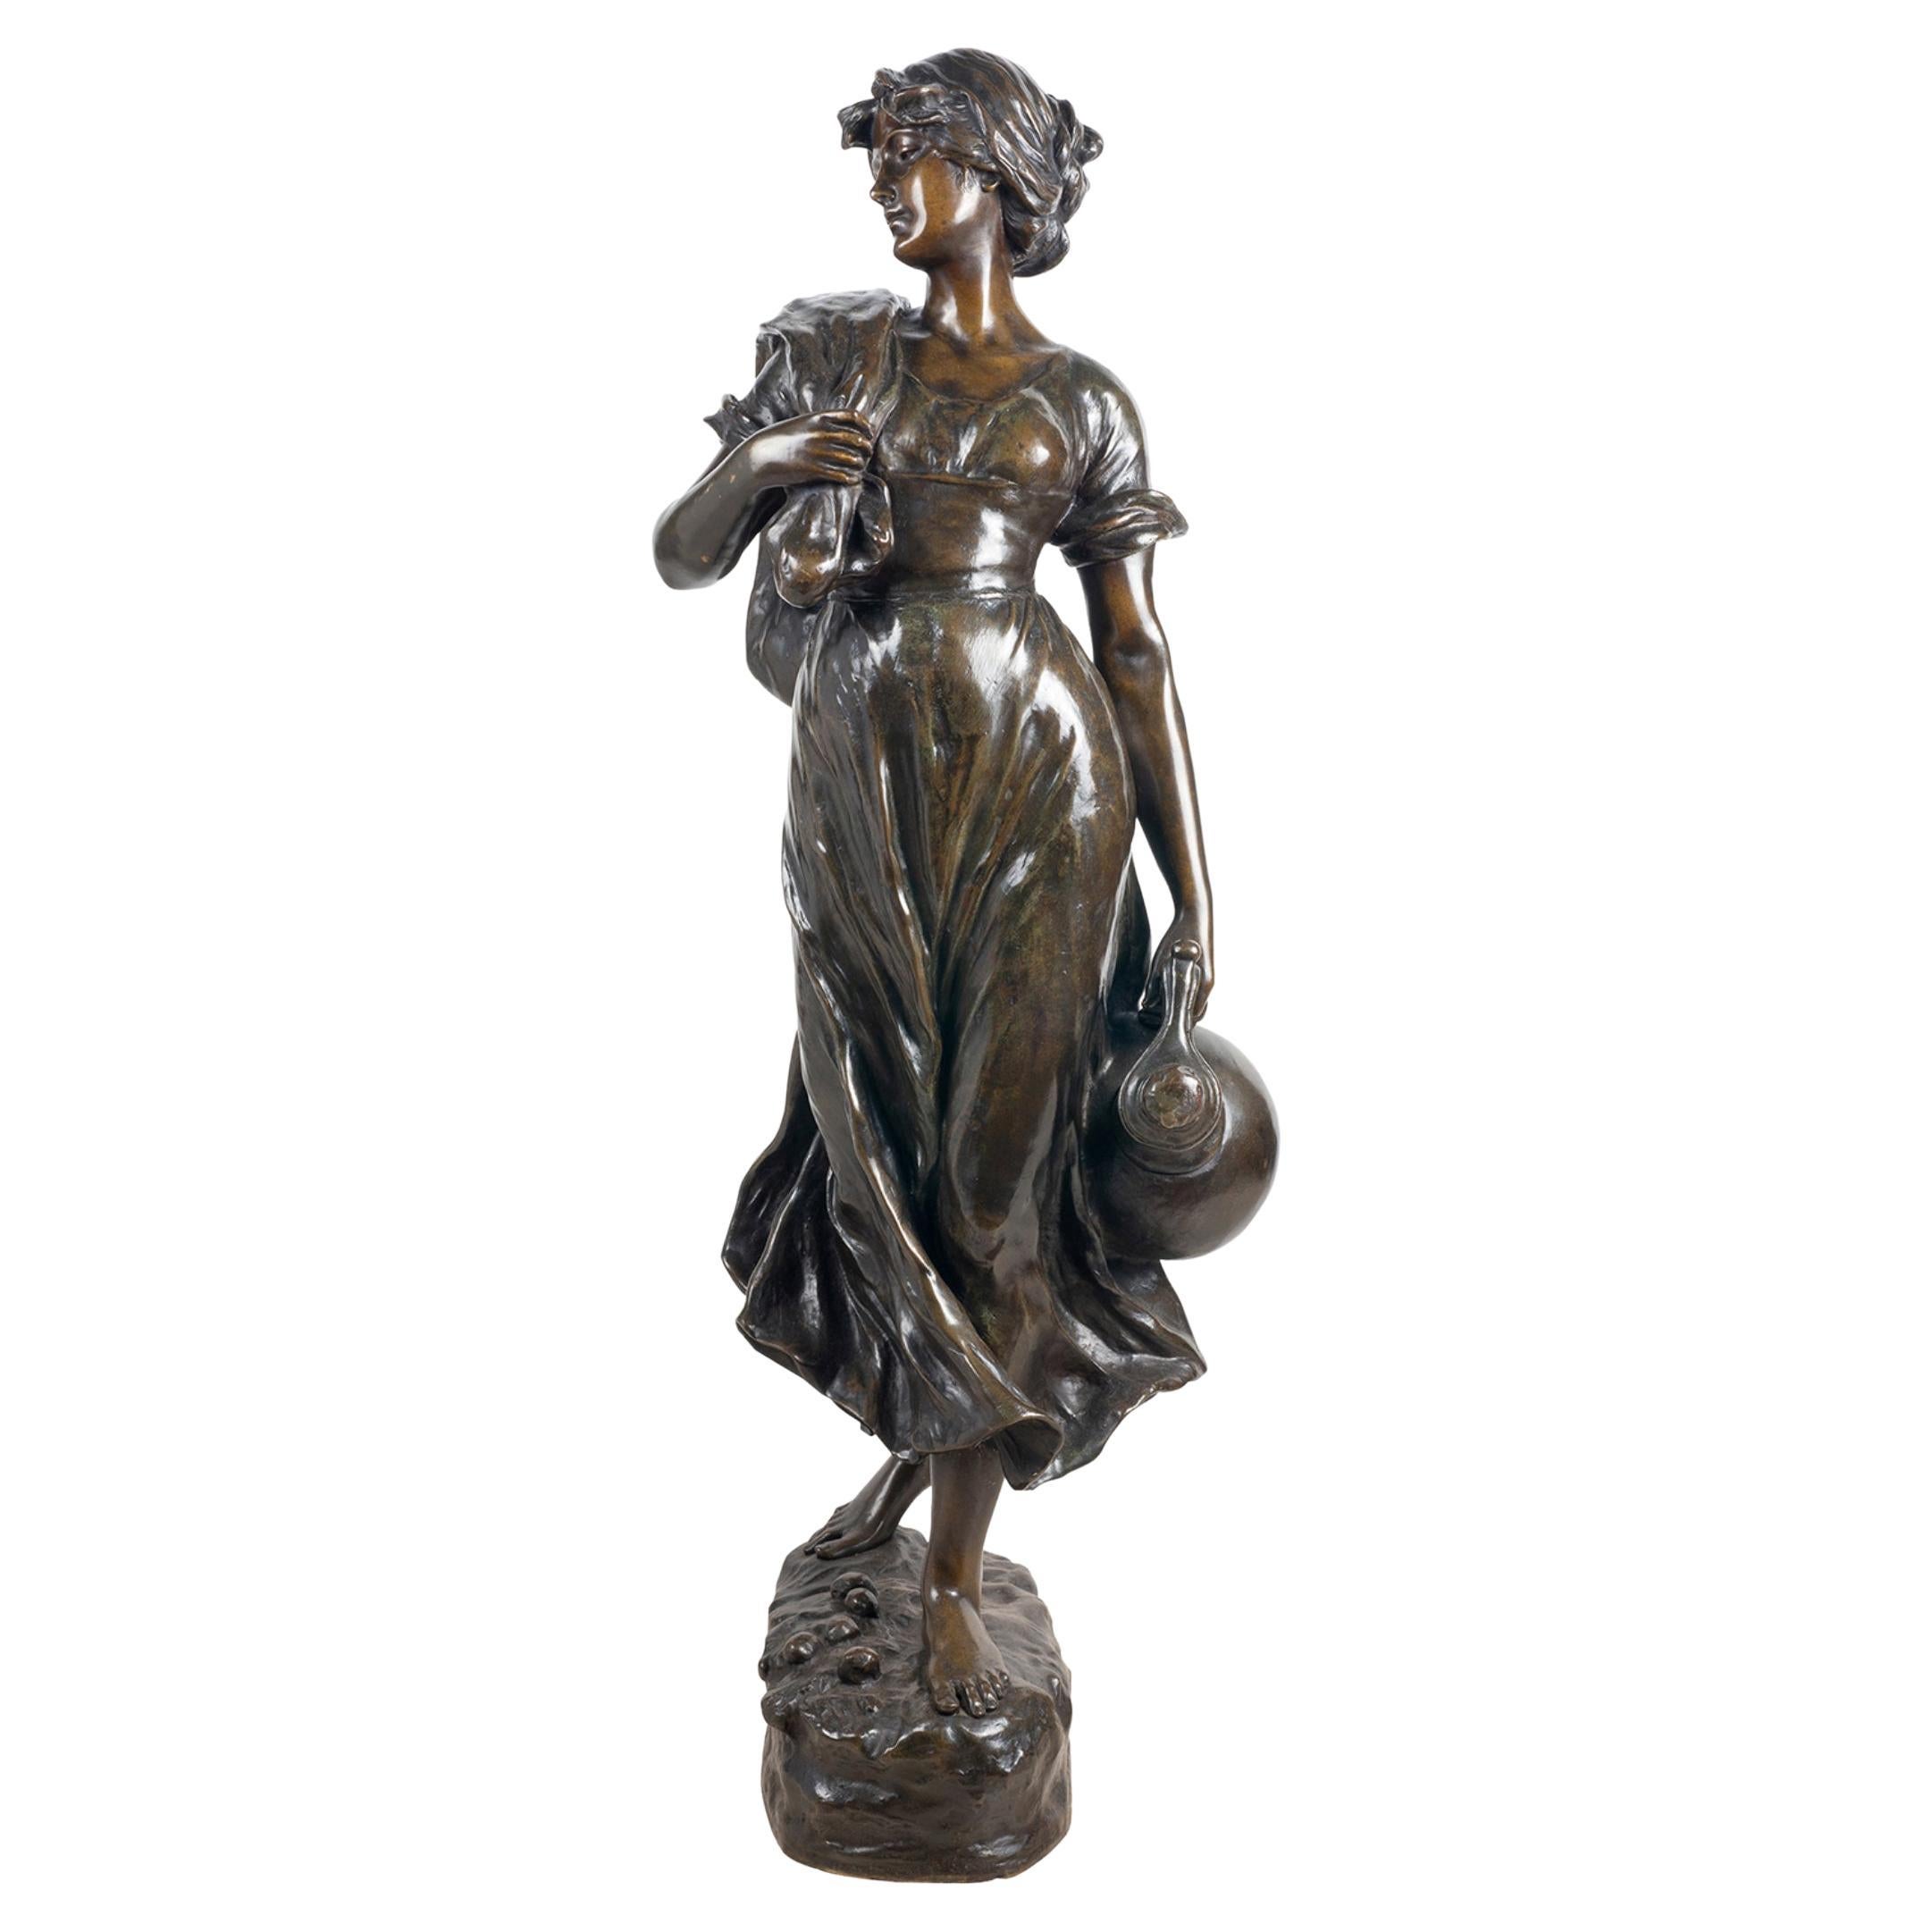 Bronzestatue einer weiblichen Wasserträgerin aus dem 19. Jahrhundert, von Hans Schork